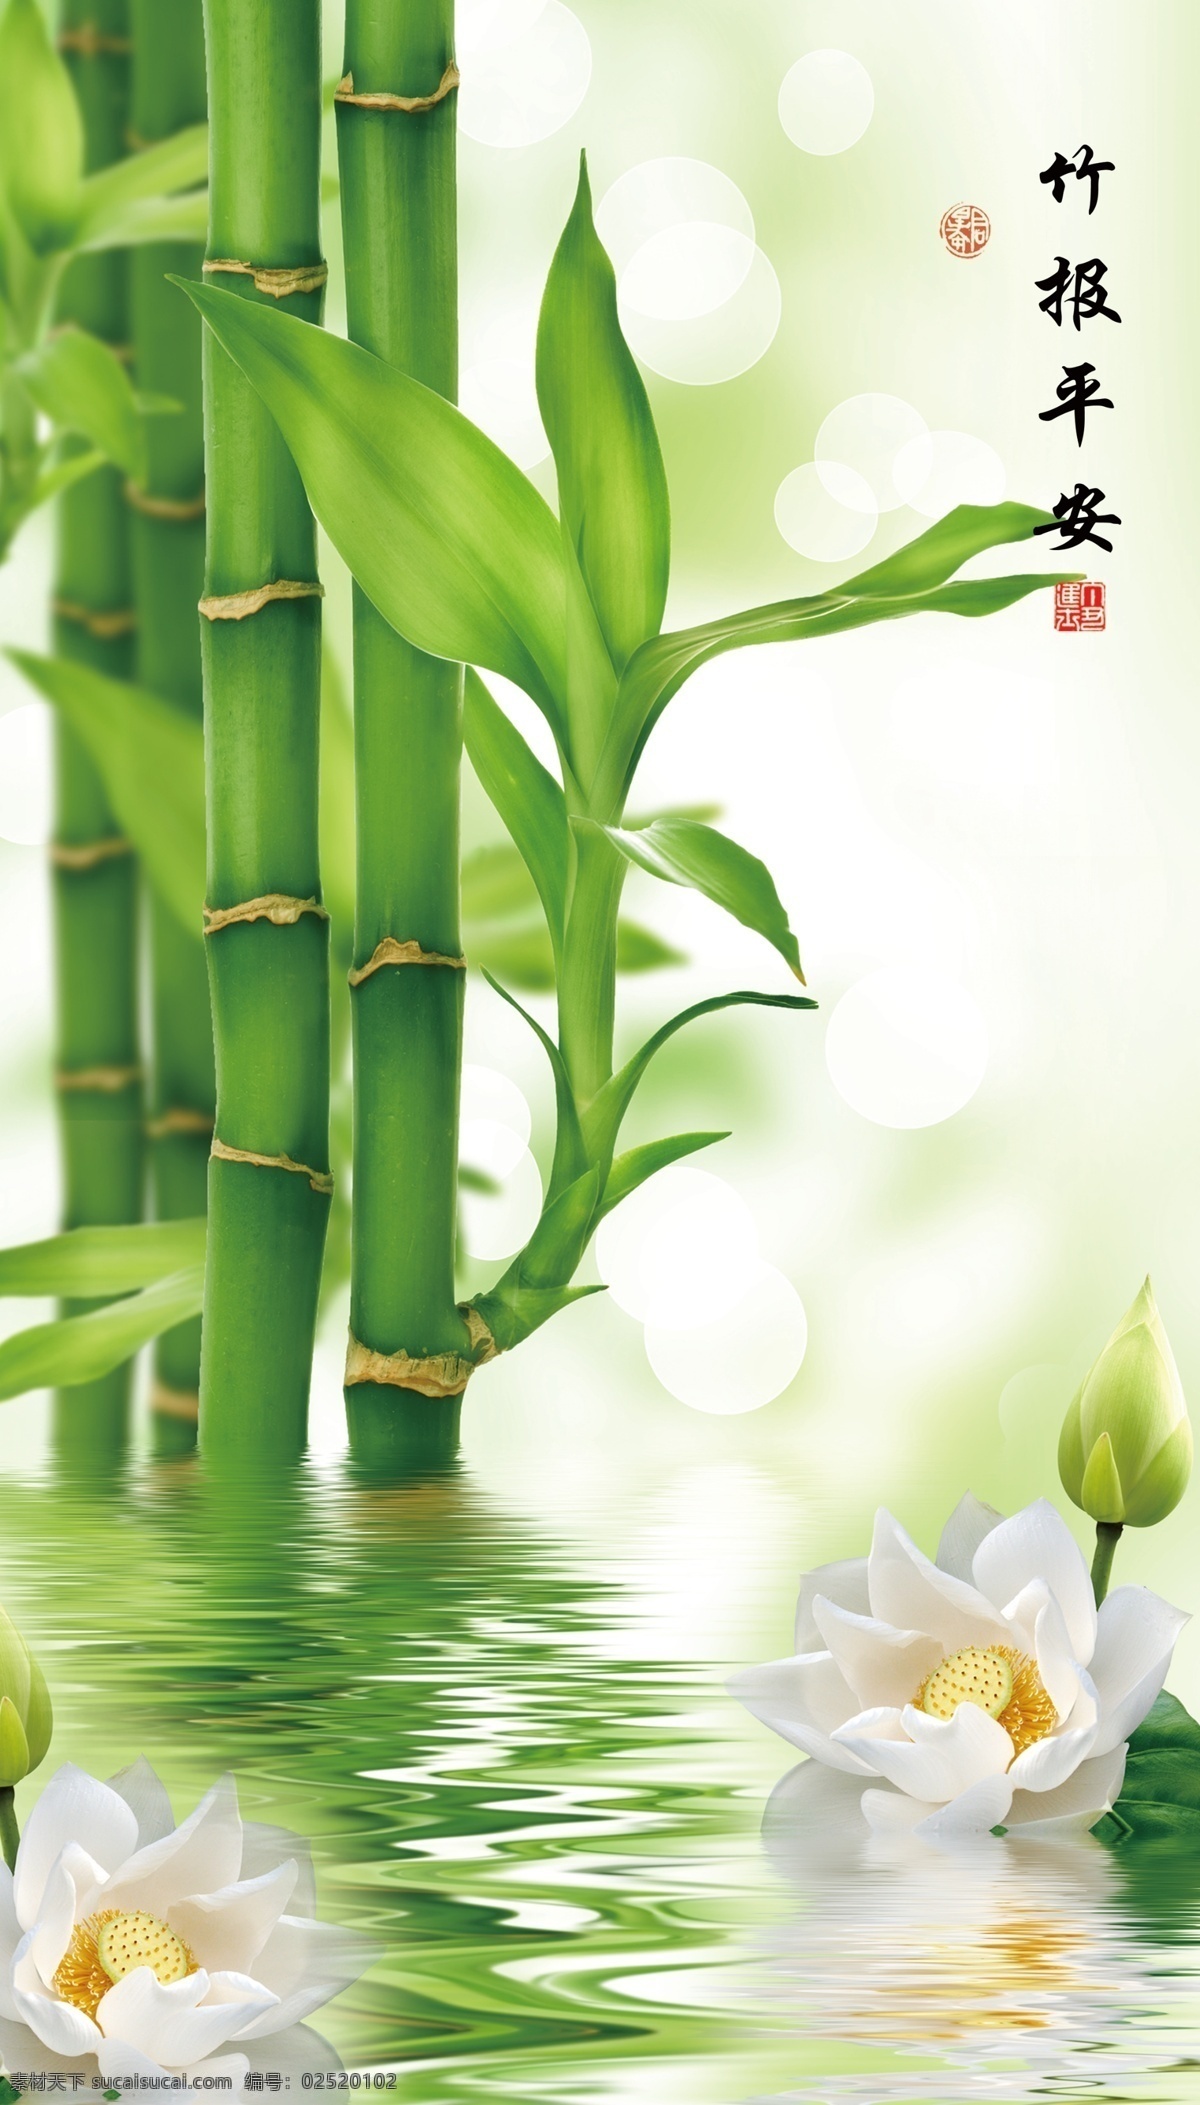 竹报平安图片 竹子 报平安 平安 白花 水 绿色竹子 清水 分层